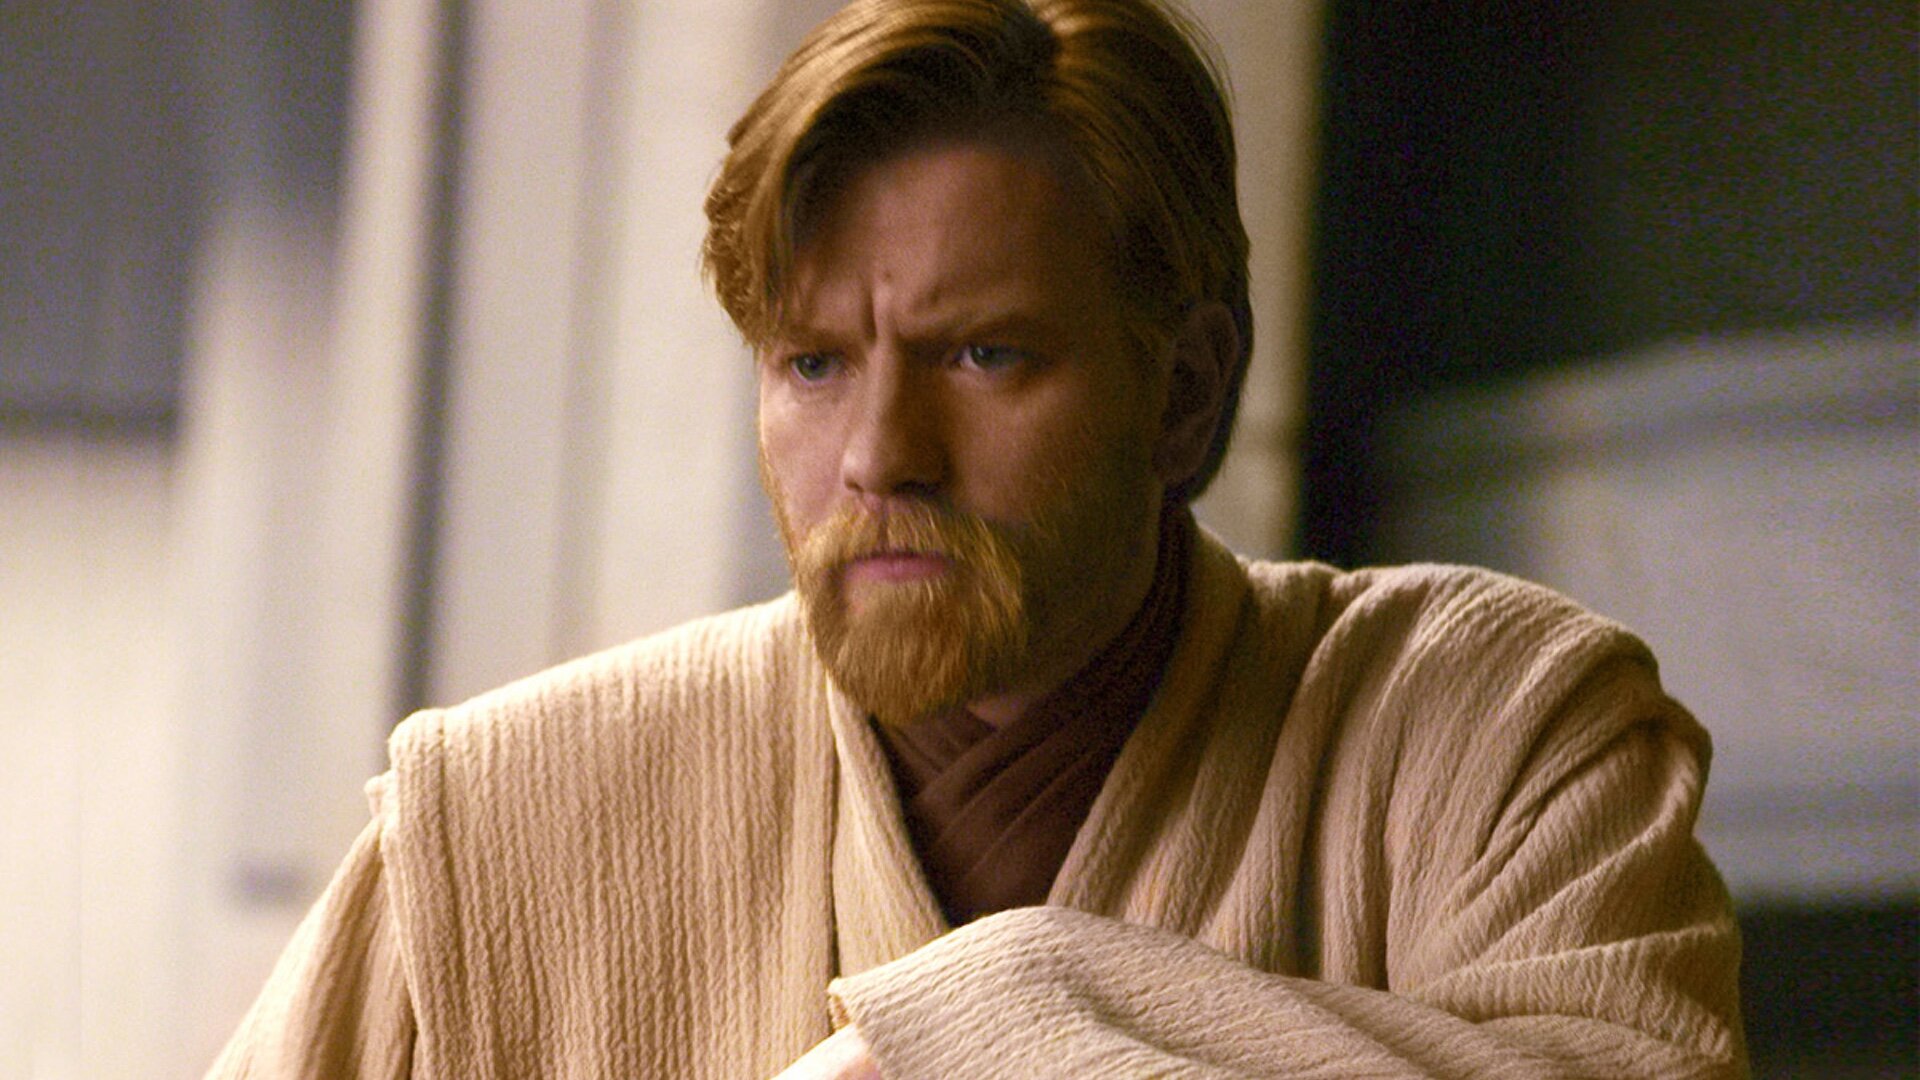 Star Wars' stands up for 'Obi-Wan Kenobi' actor Moses Ingram after